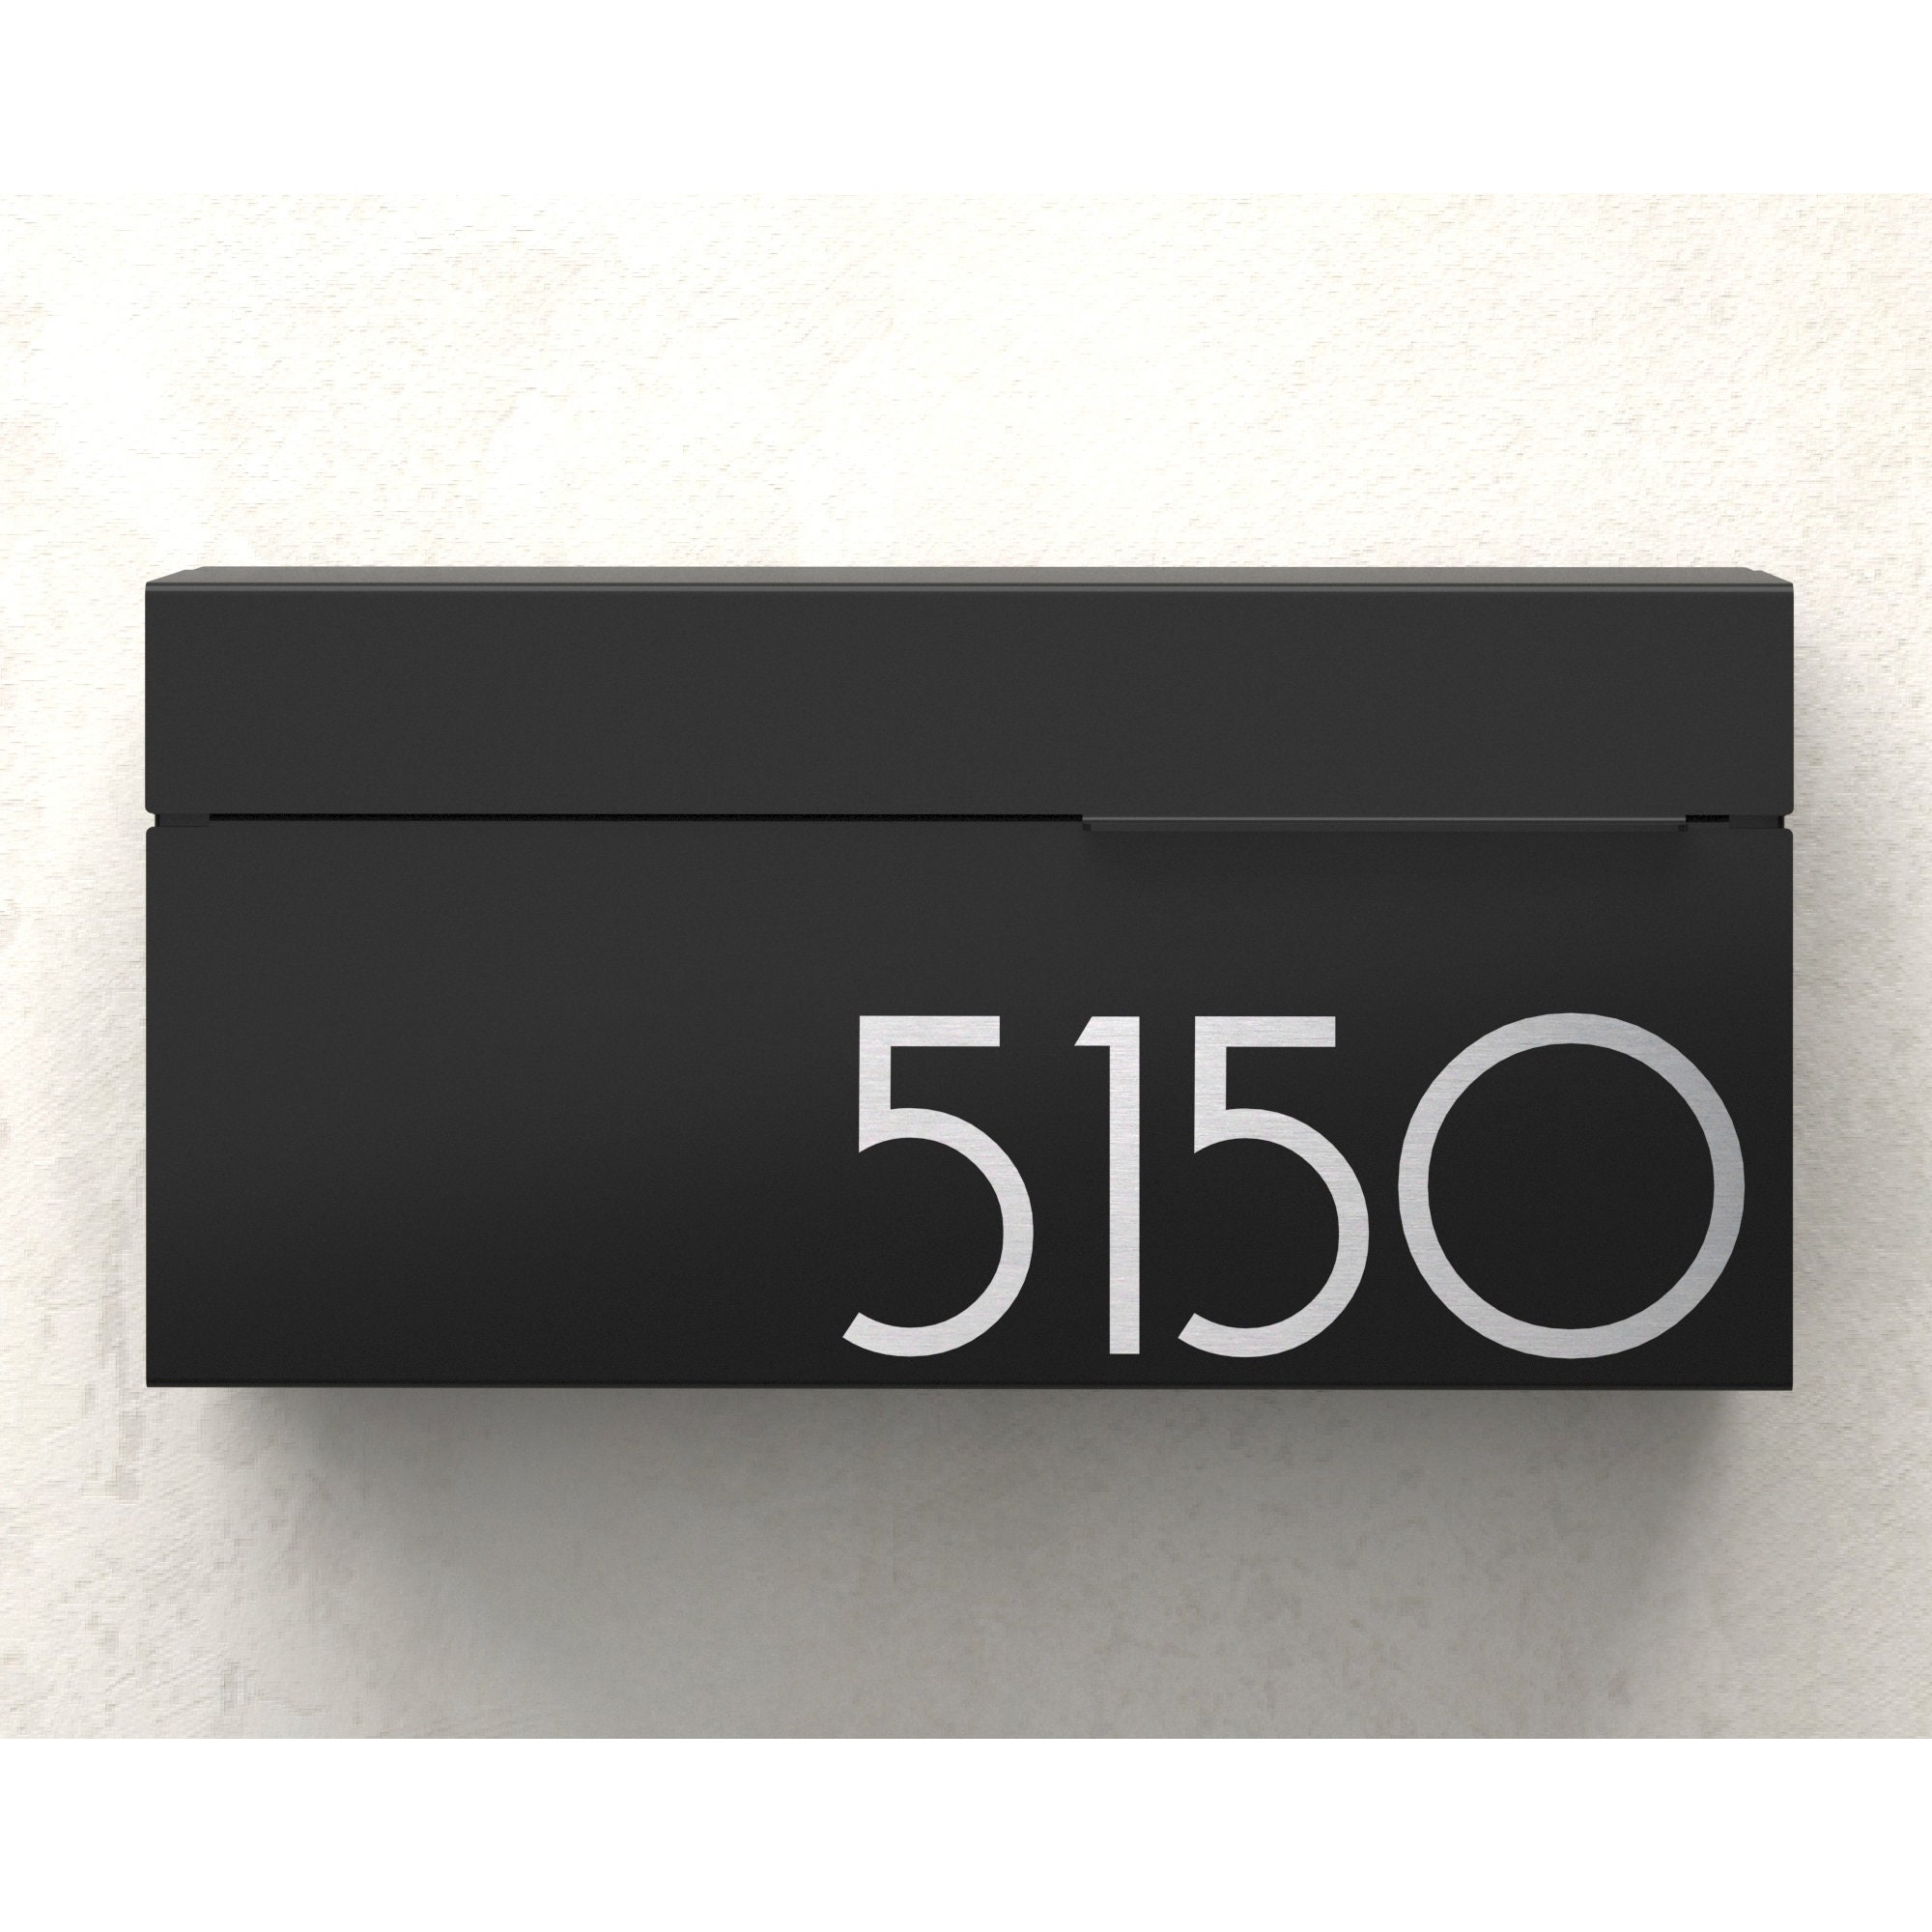 Plaque boite aux lettres pour une société avec logo n°516